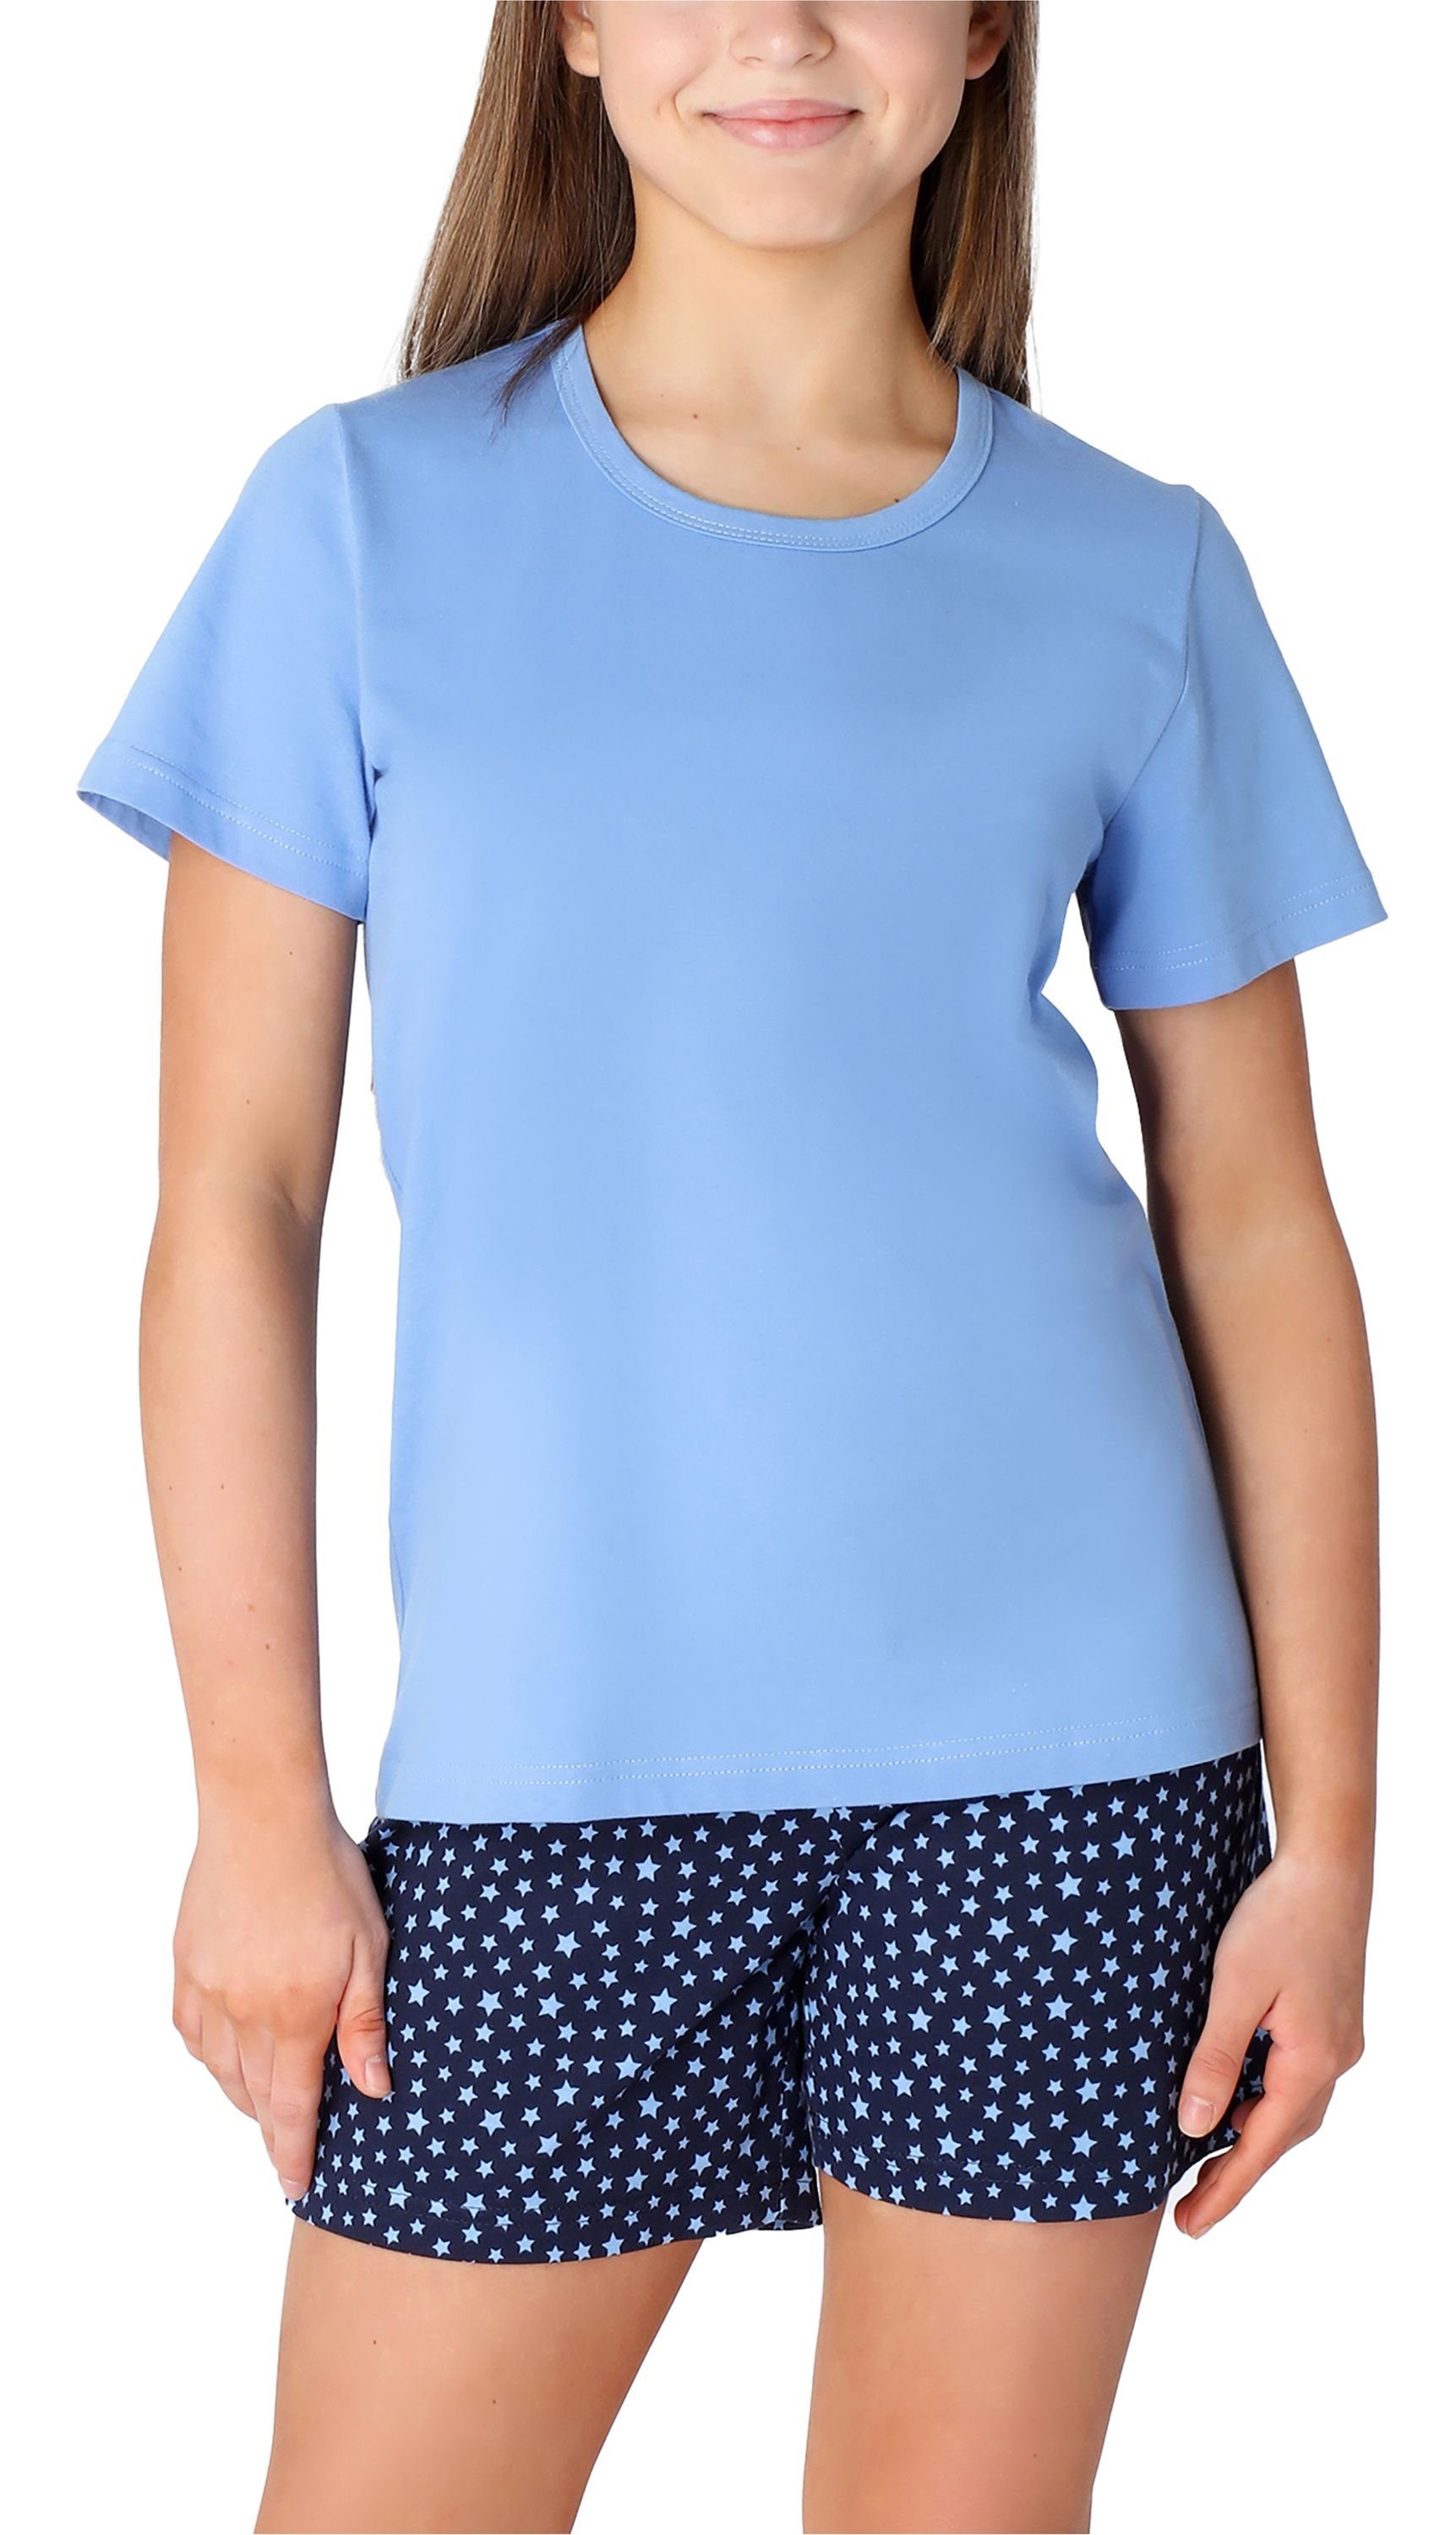 Merry Style Schlafanzug Mädchen Schlafanzüge Kurz aus Baumwolle Pyjama Set MS10-265 Blau/Marine/Sterne